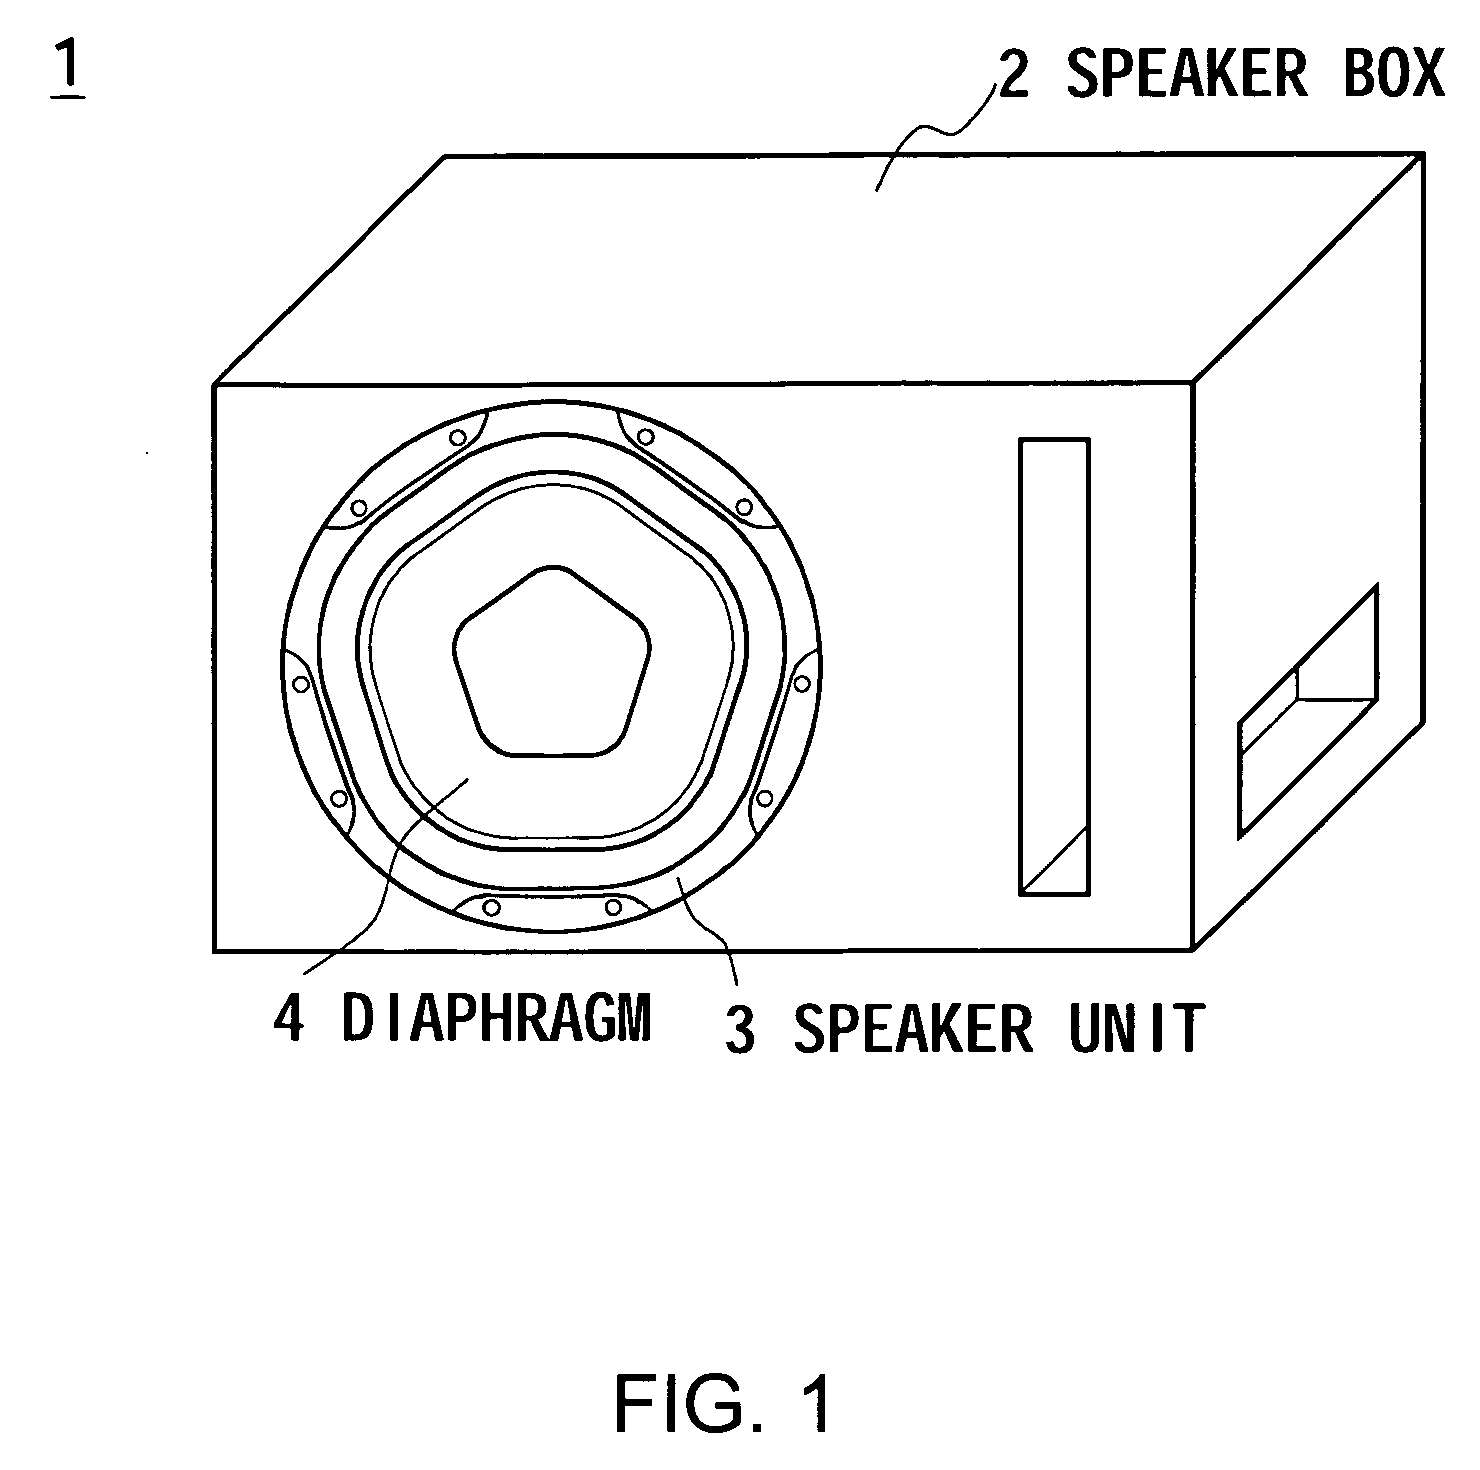 Speaker diaphragm, speaker unit and speaker apparatus